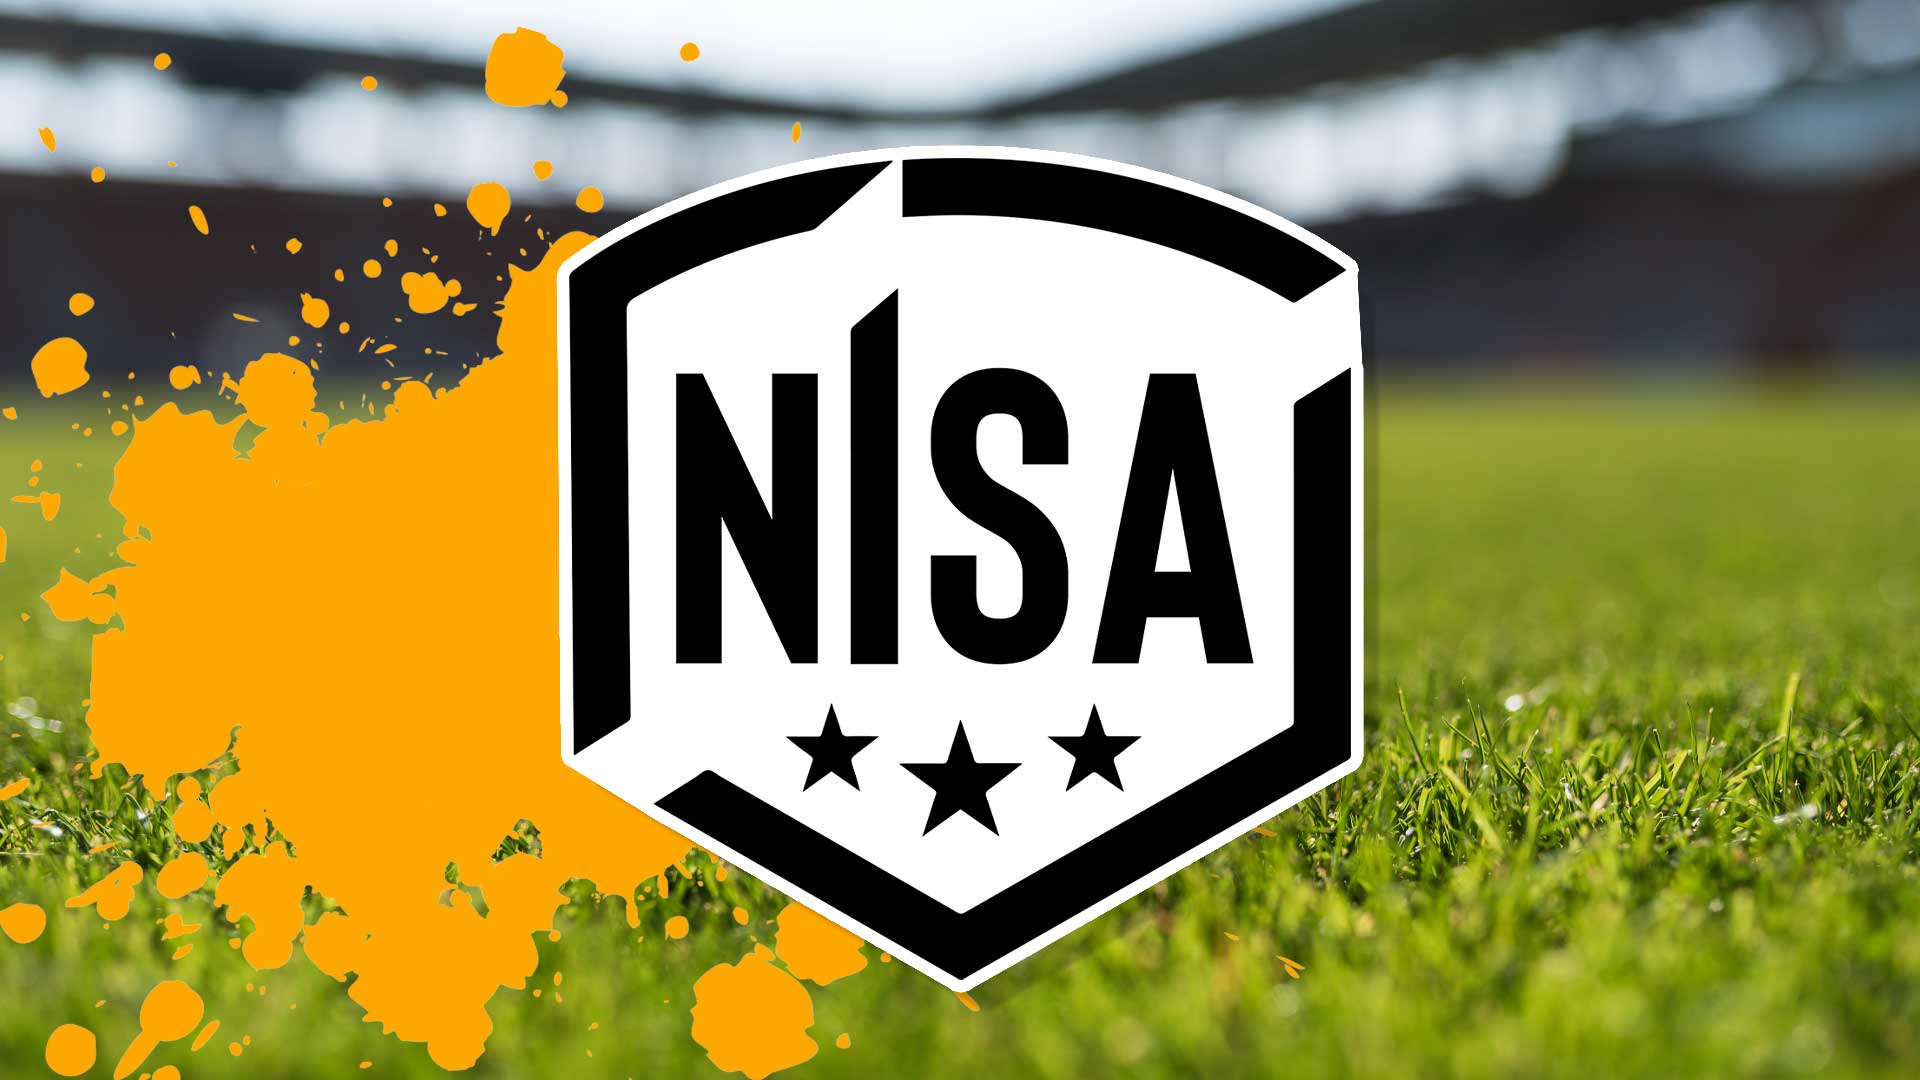 National Independent Soccer Association logo